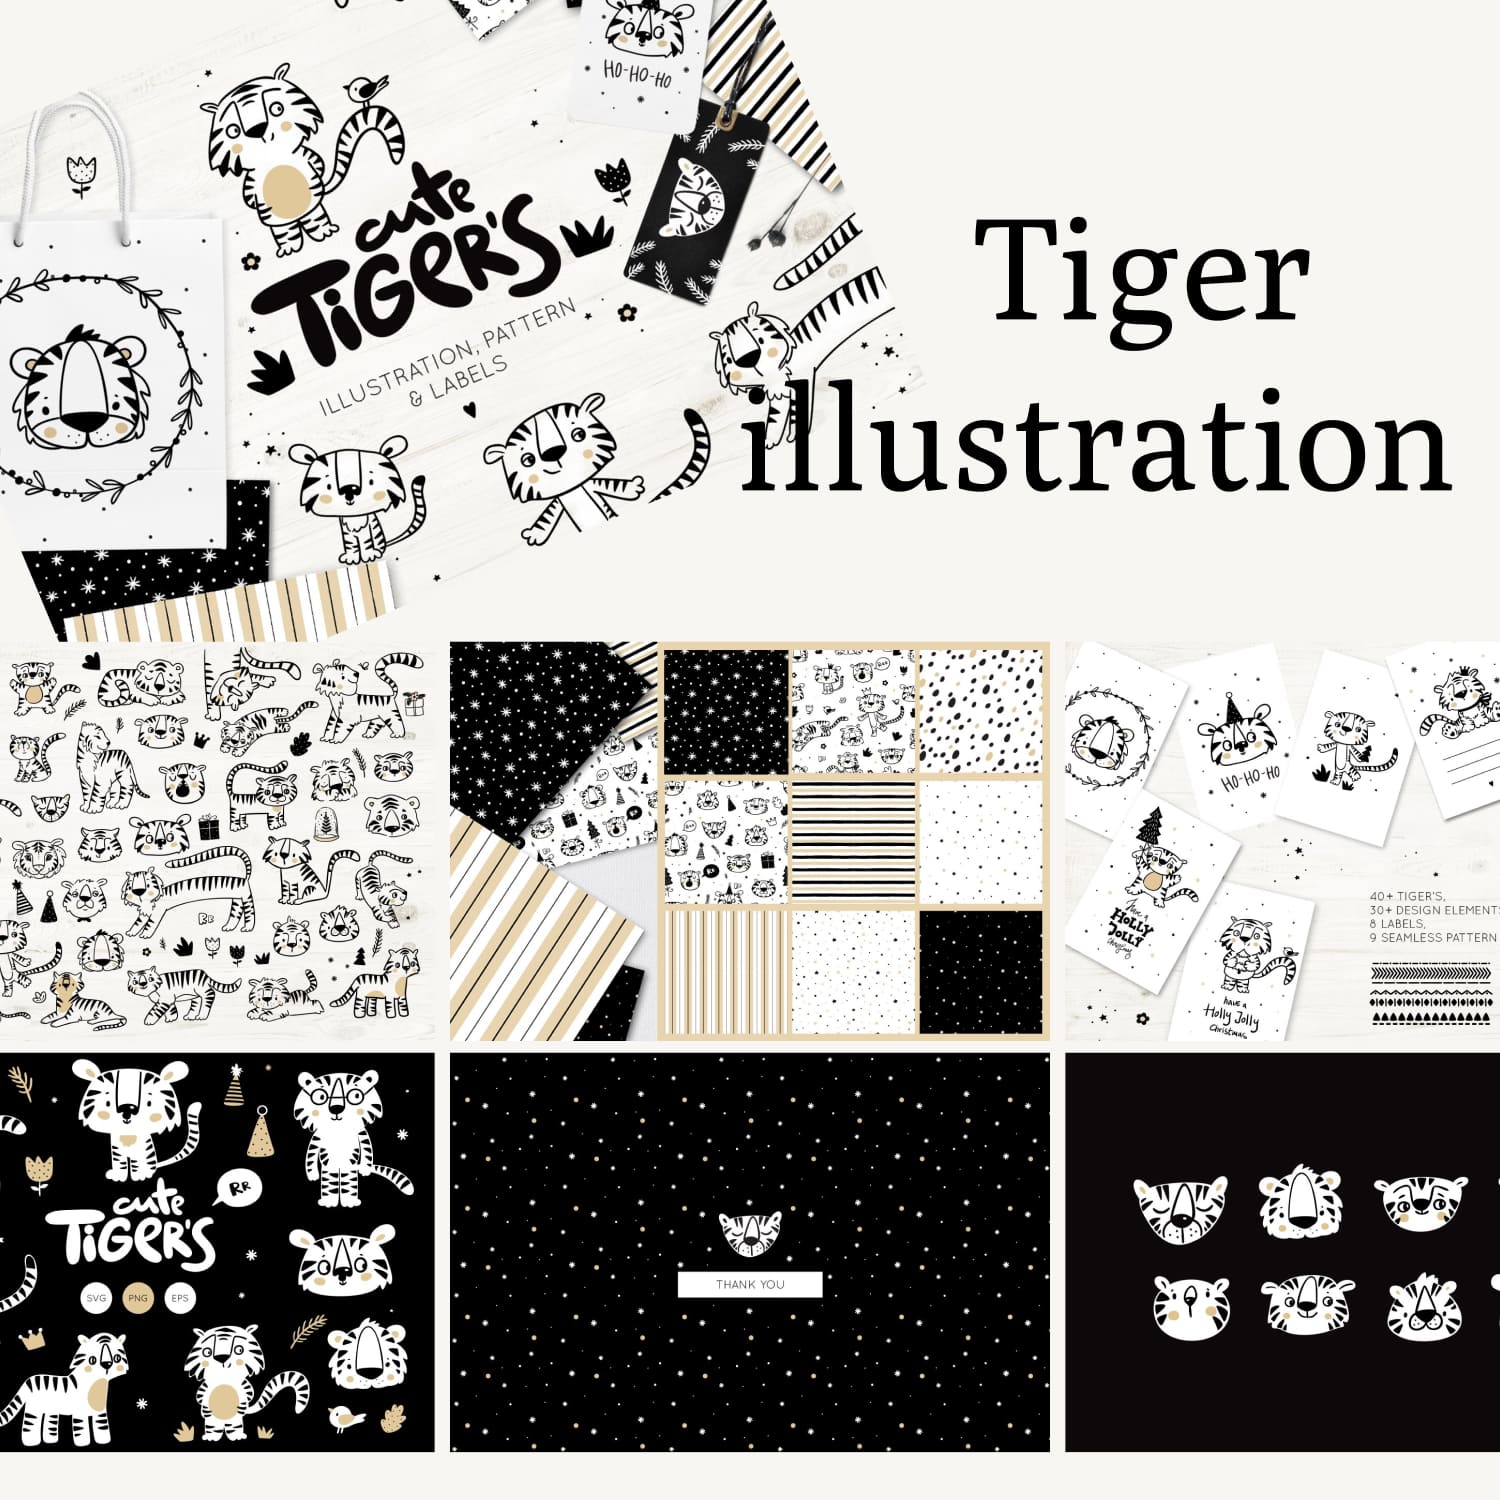 Tiger illustration.